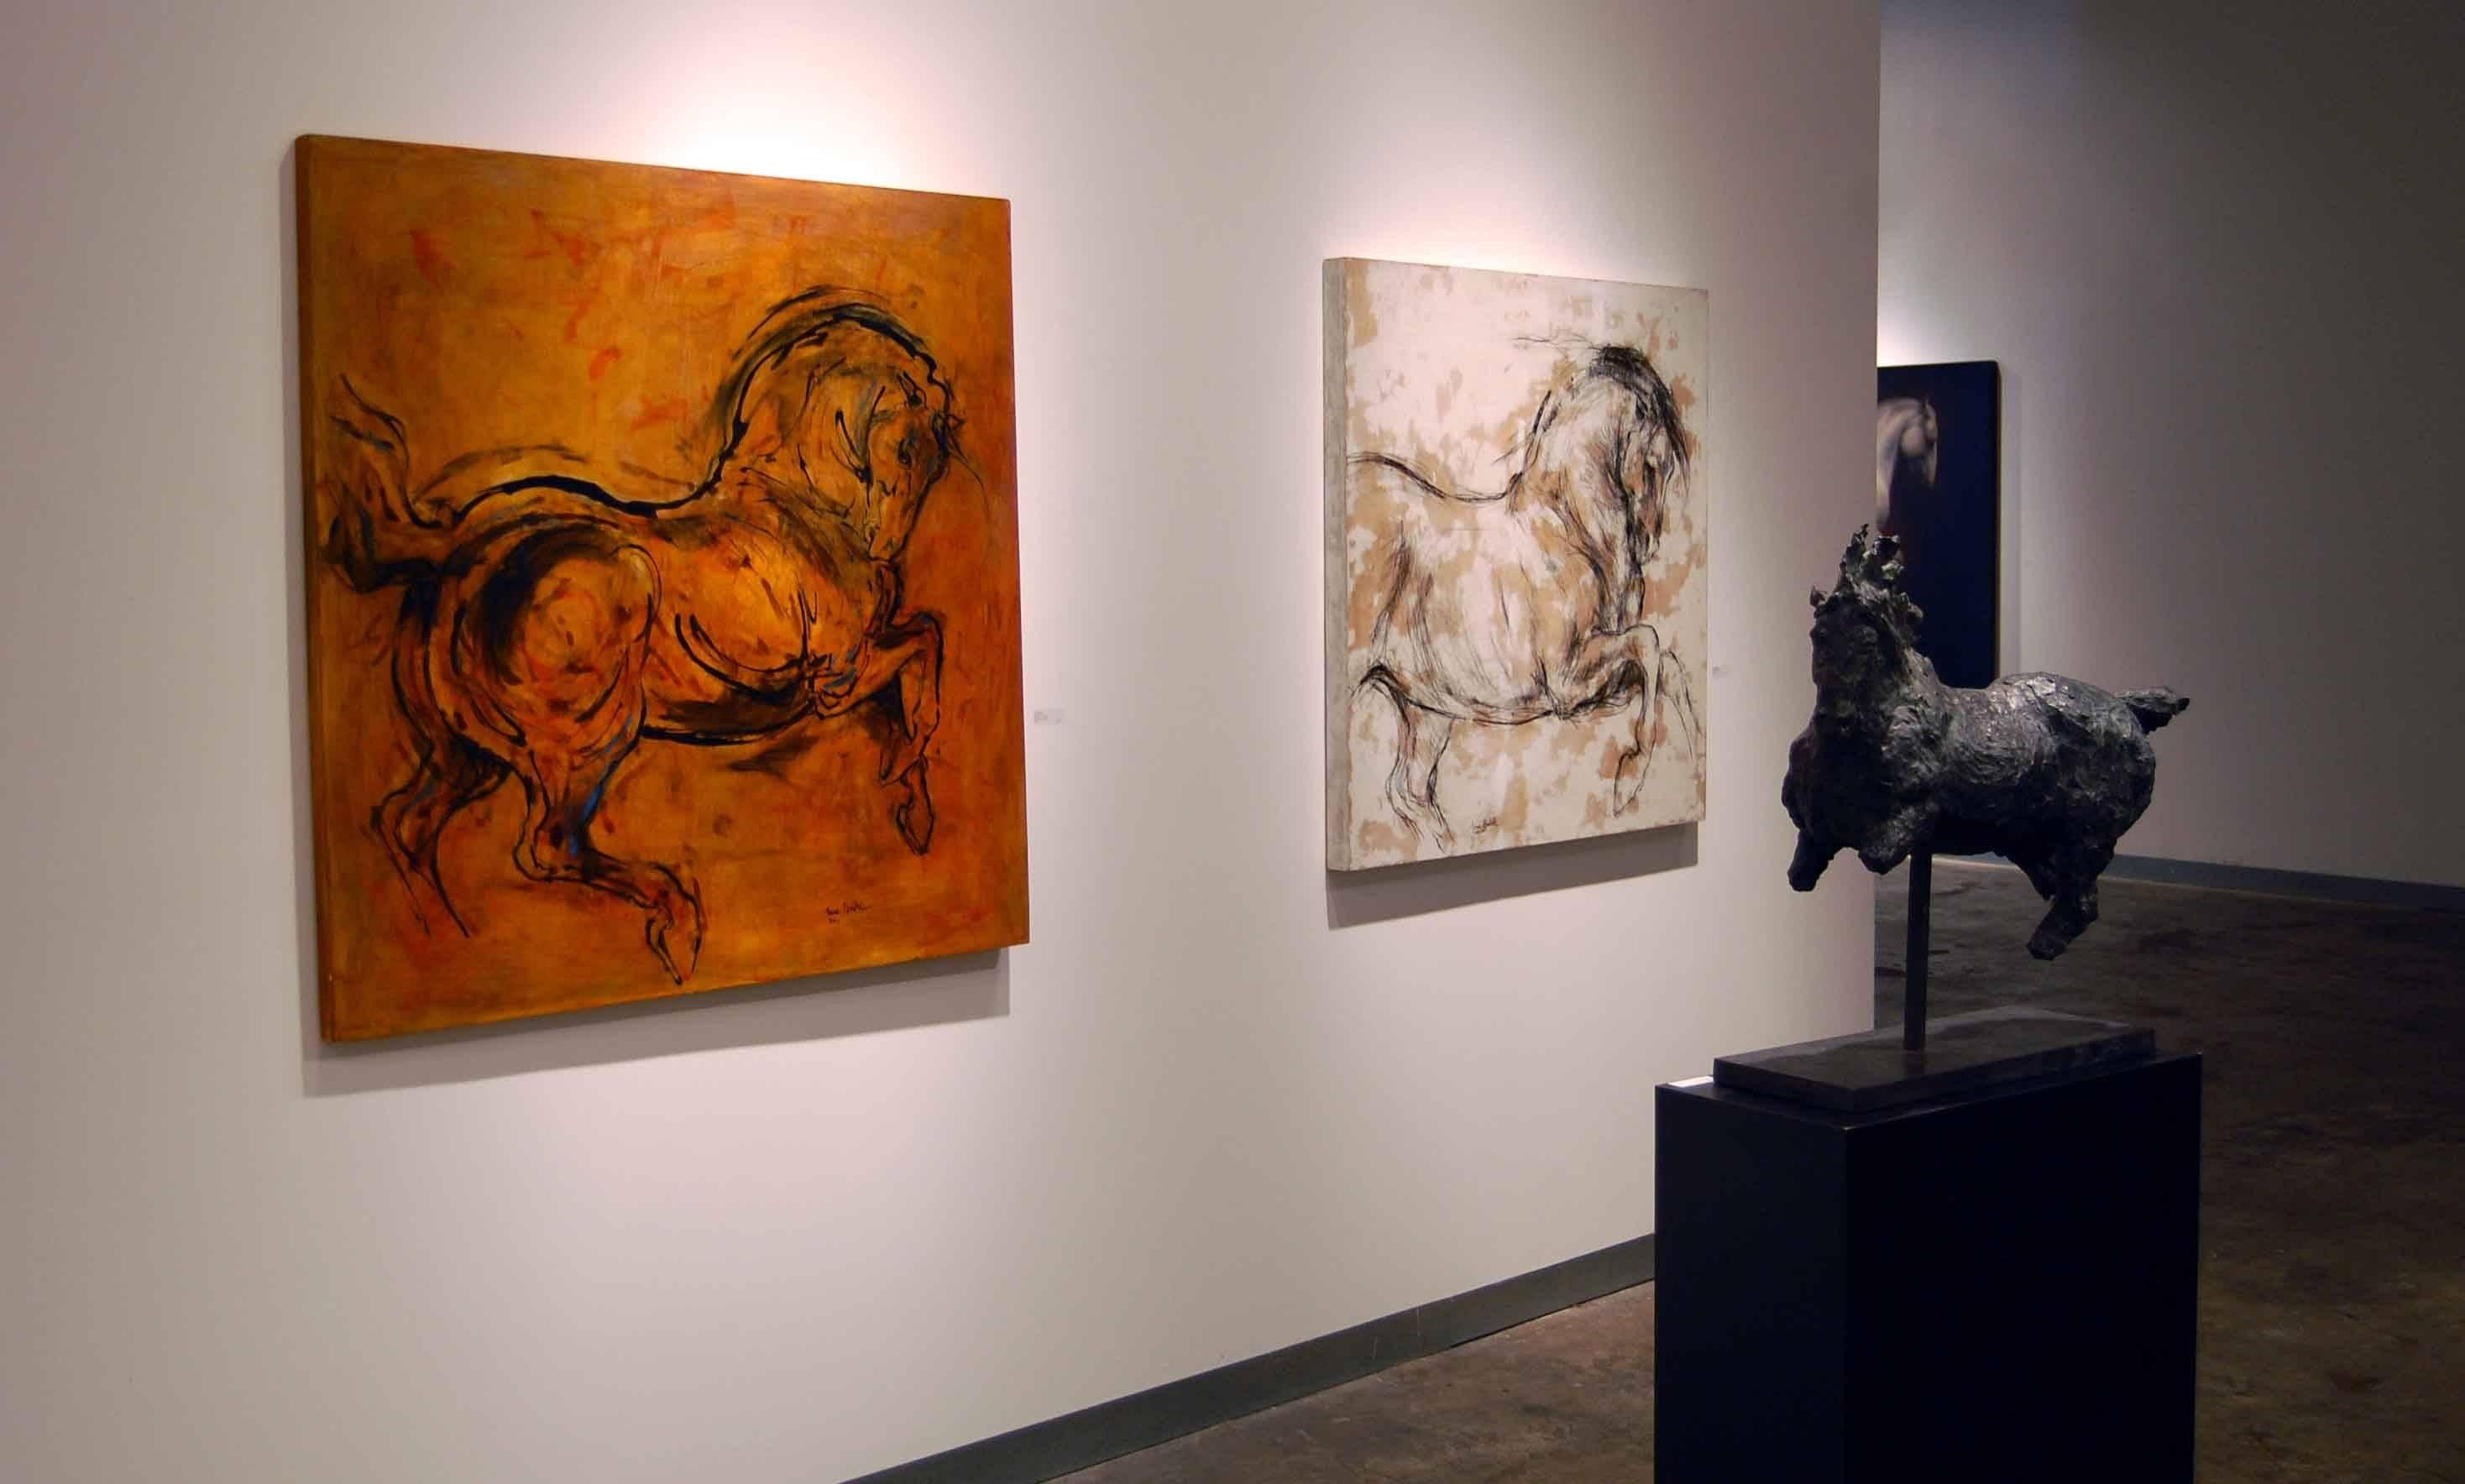 Lina Binkele
Altamira, 2001
Mixed media on panel
24 x 24 in. (60.96 x 60.96 cm)

A beautiful rendering of horses running that captures the essence of Binkele's sculpture.